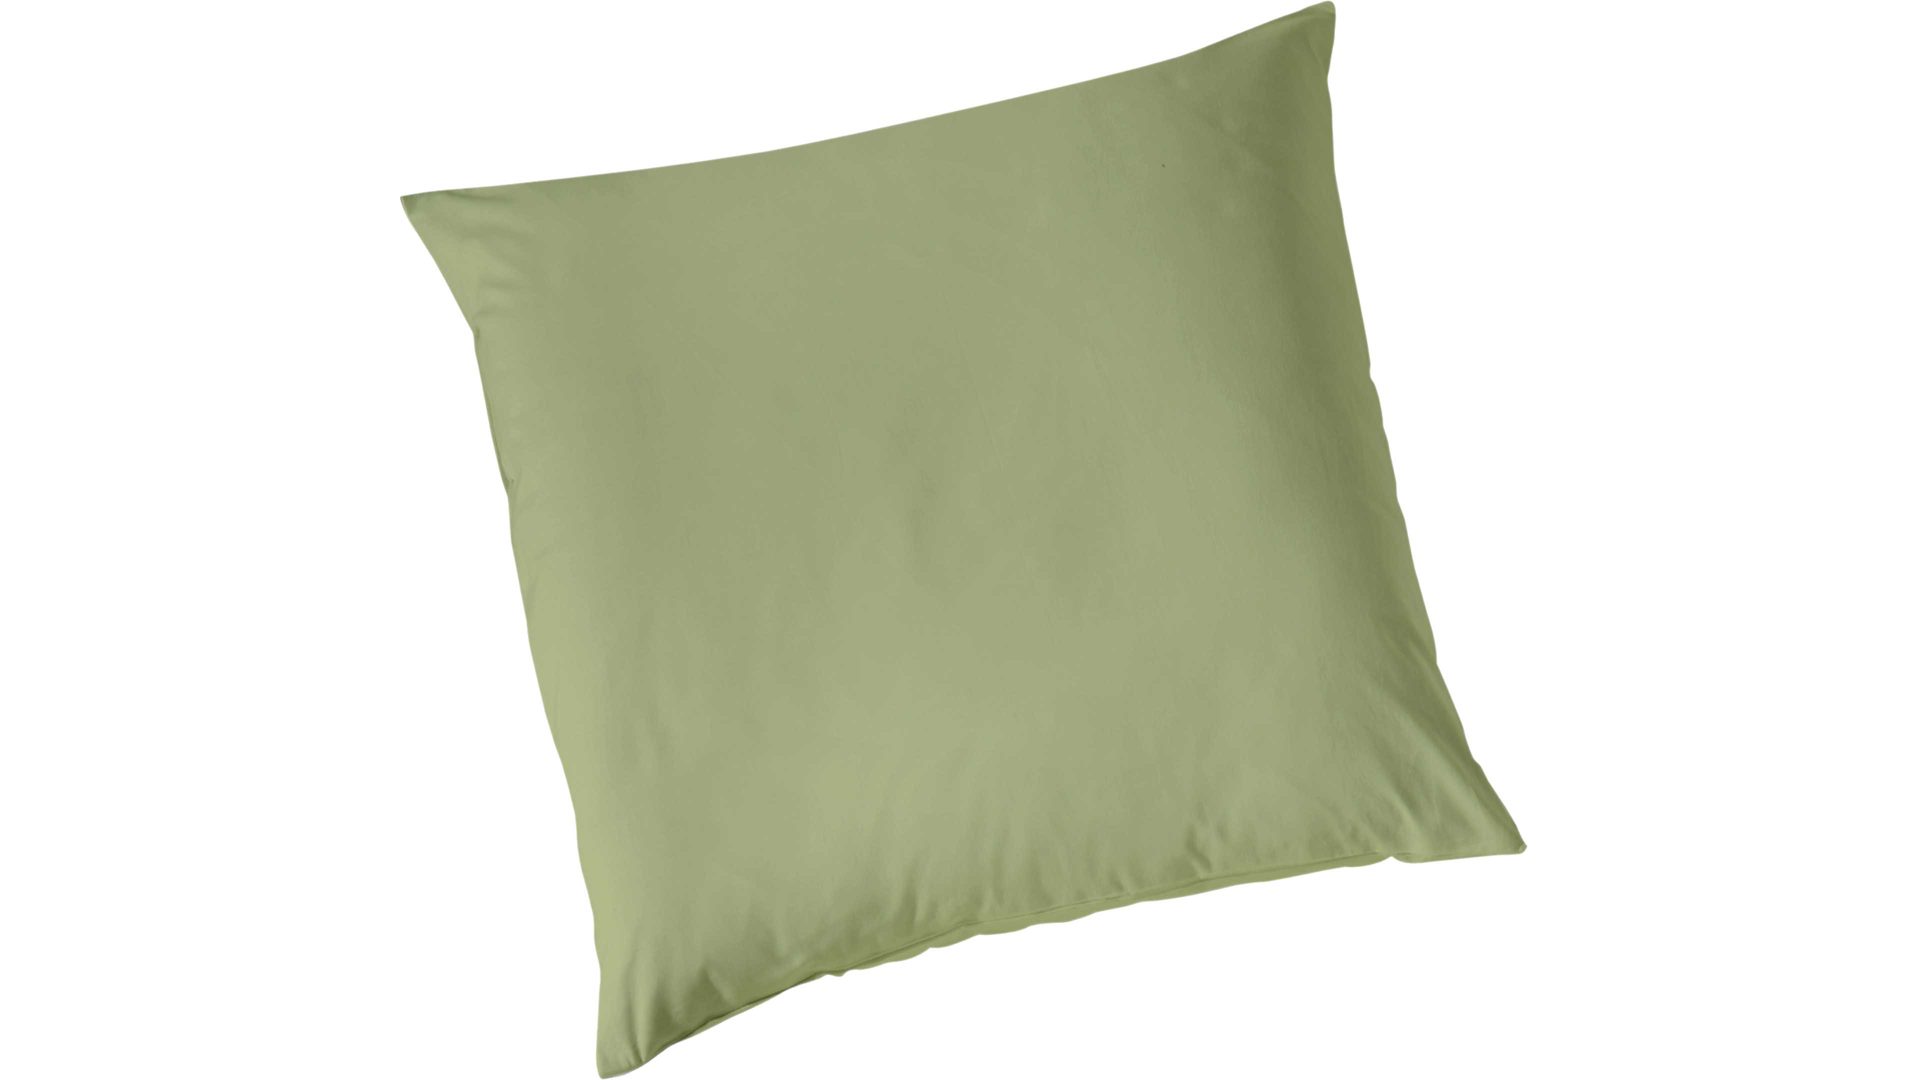 Kissenbezug /-hülle H.g. hahn haustextilien aus Stoff in Grün HAHN Luxus-Satin-Kopfkissenbezug Sempre khakifarbener Baumwollsatin - ca. 80 x 80 cm